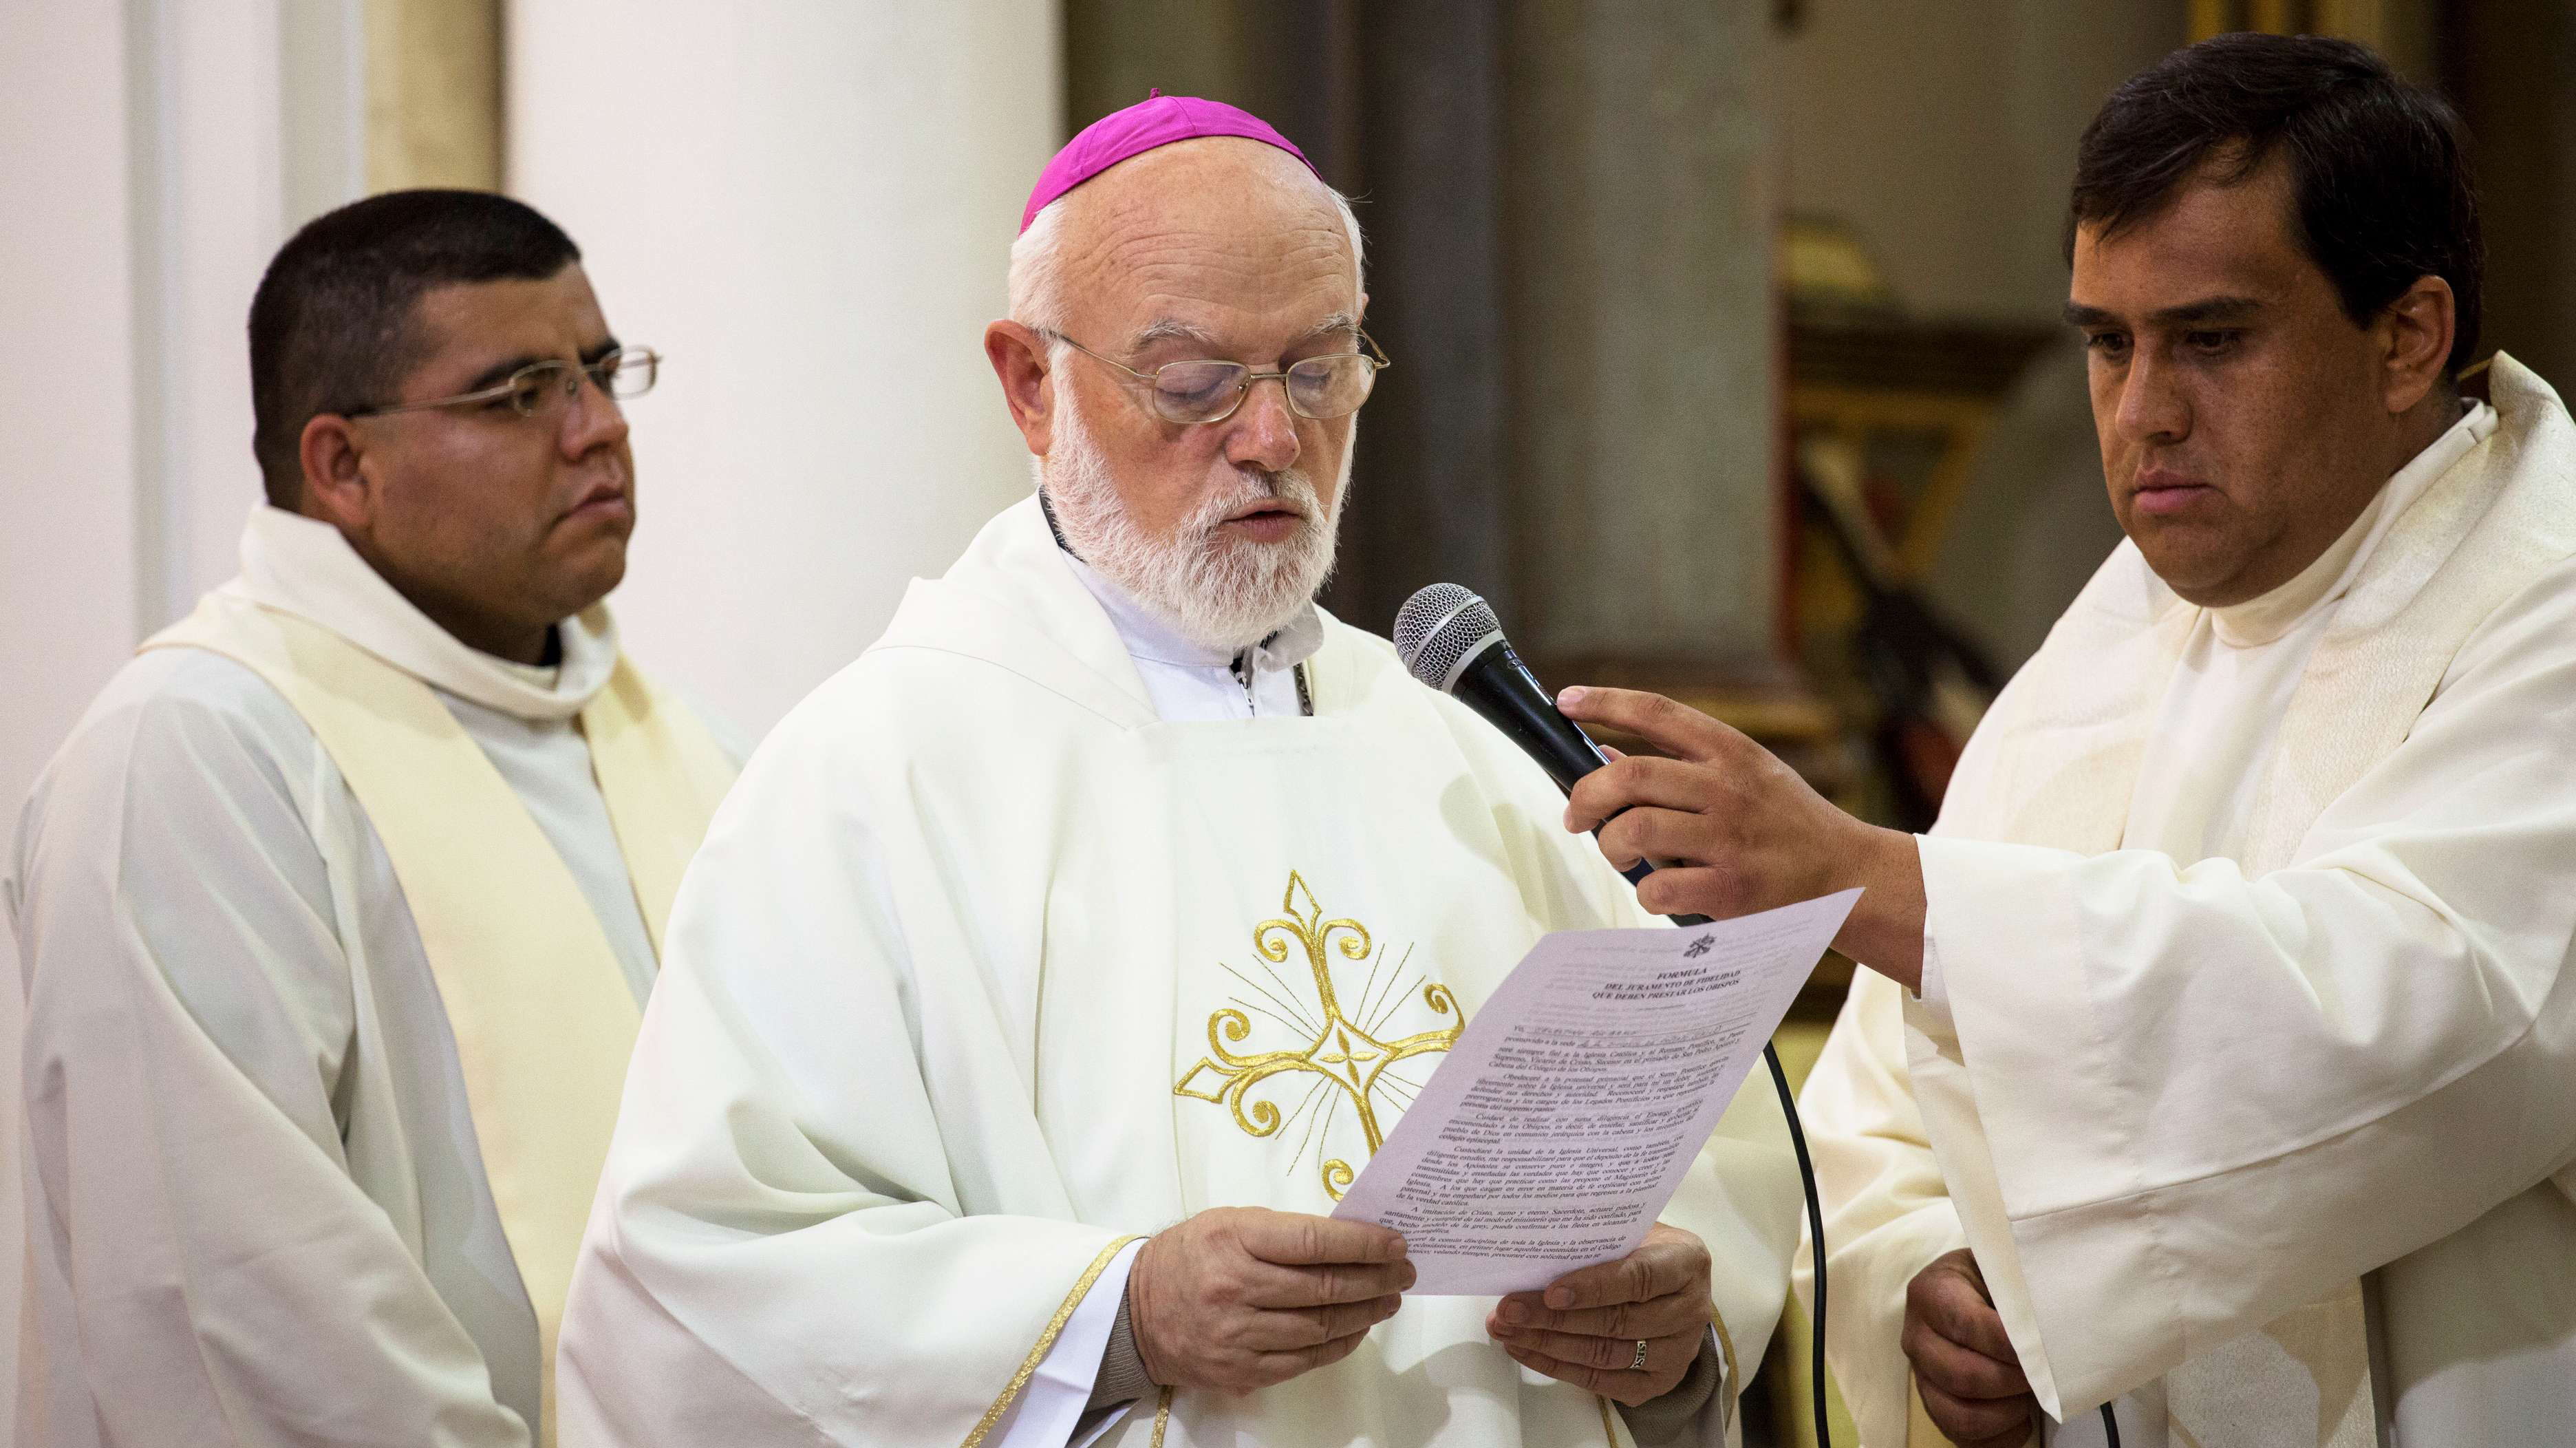 Quién es Celestino Aós, el obispo español que asumirá como administrador apostólico de Santiago tras salida de Ezzati